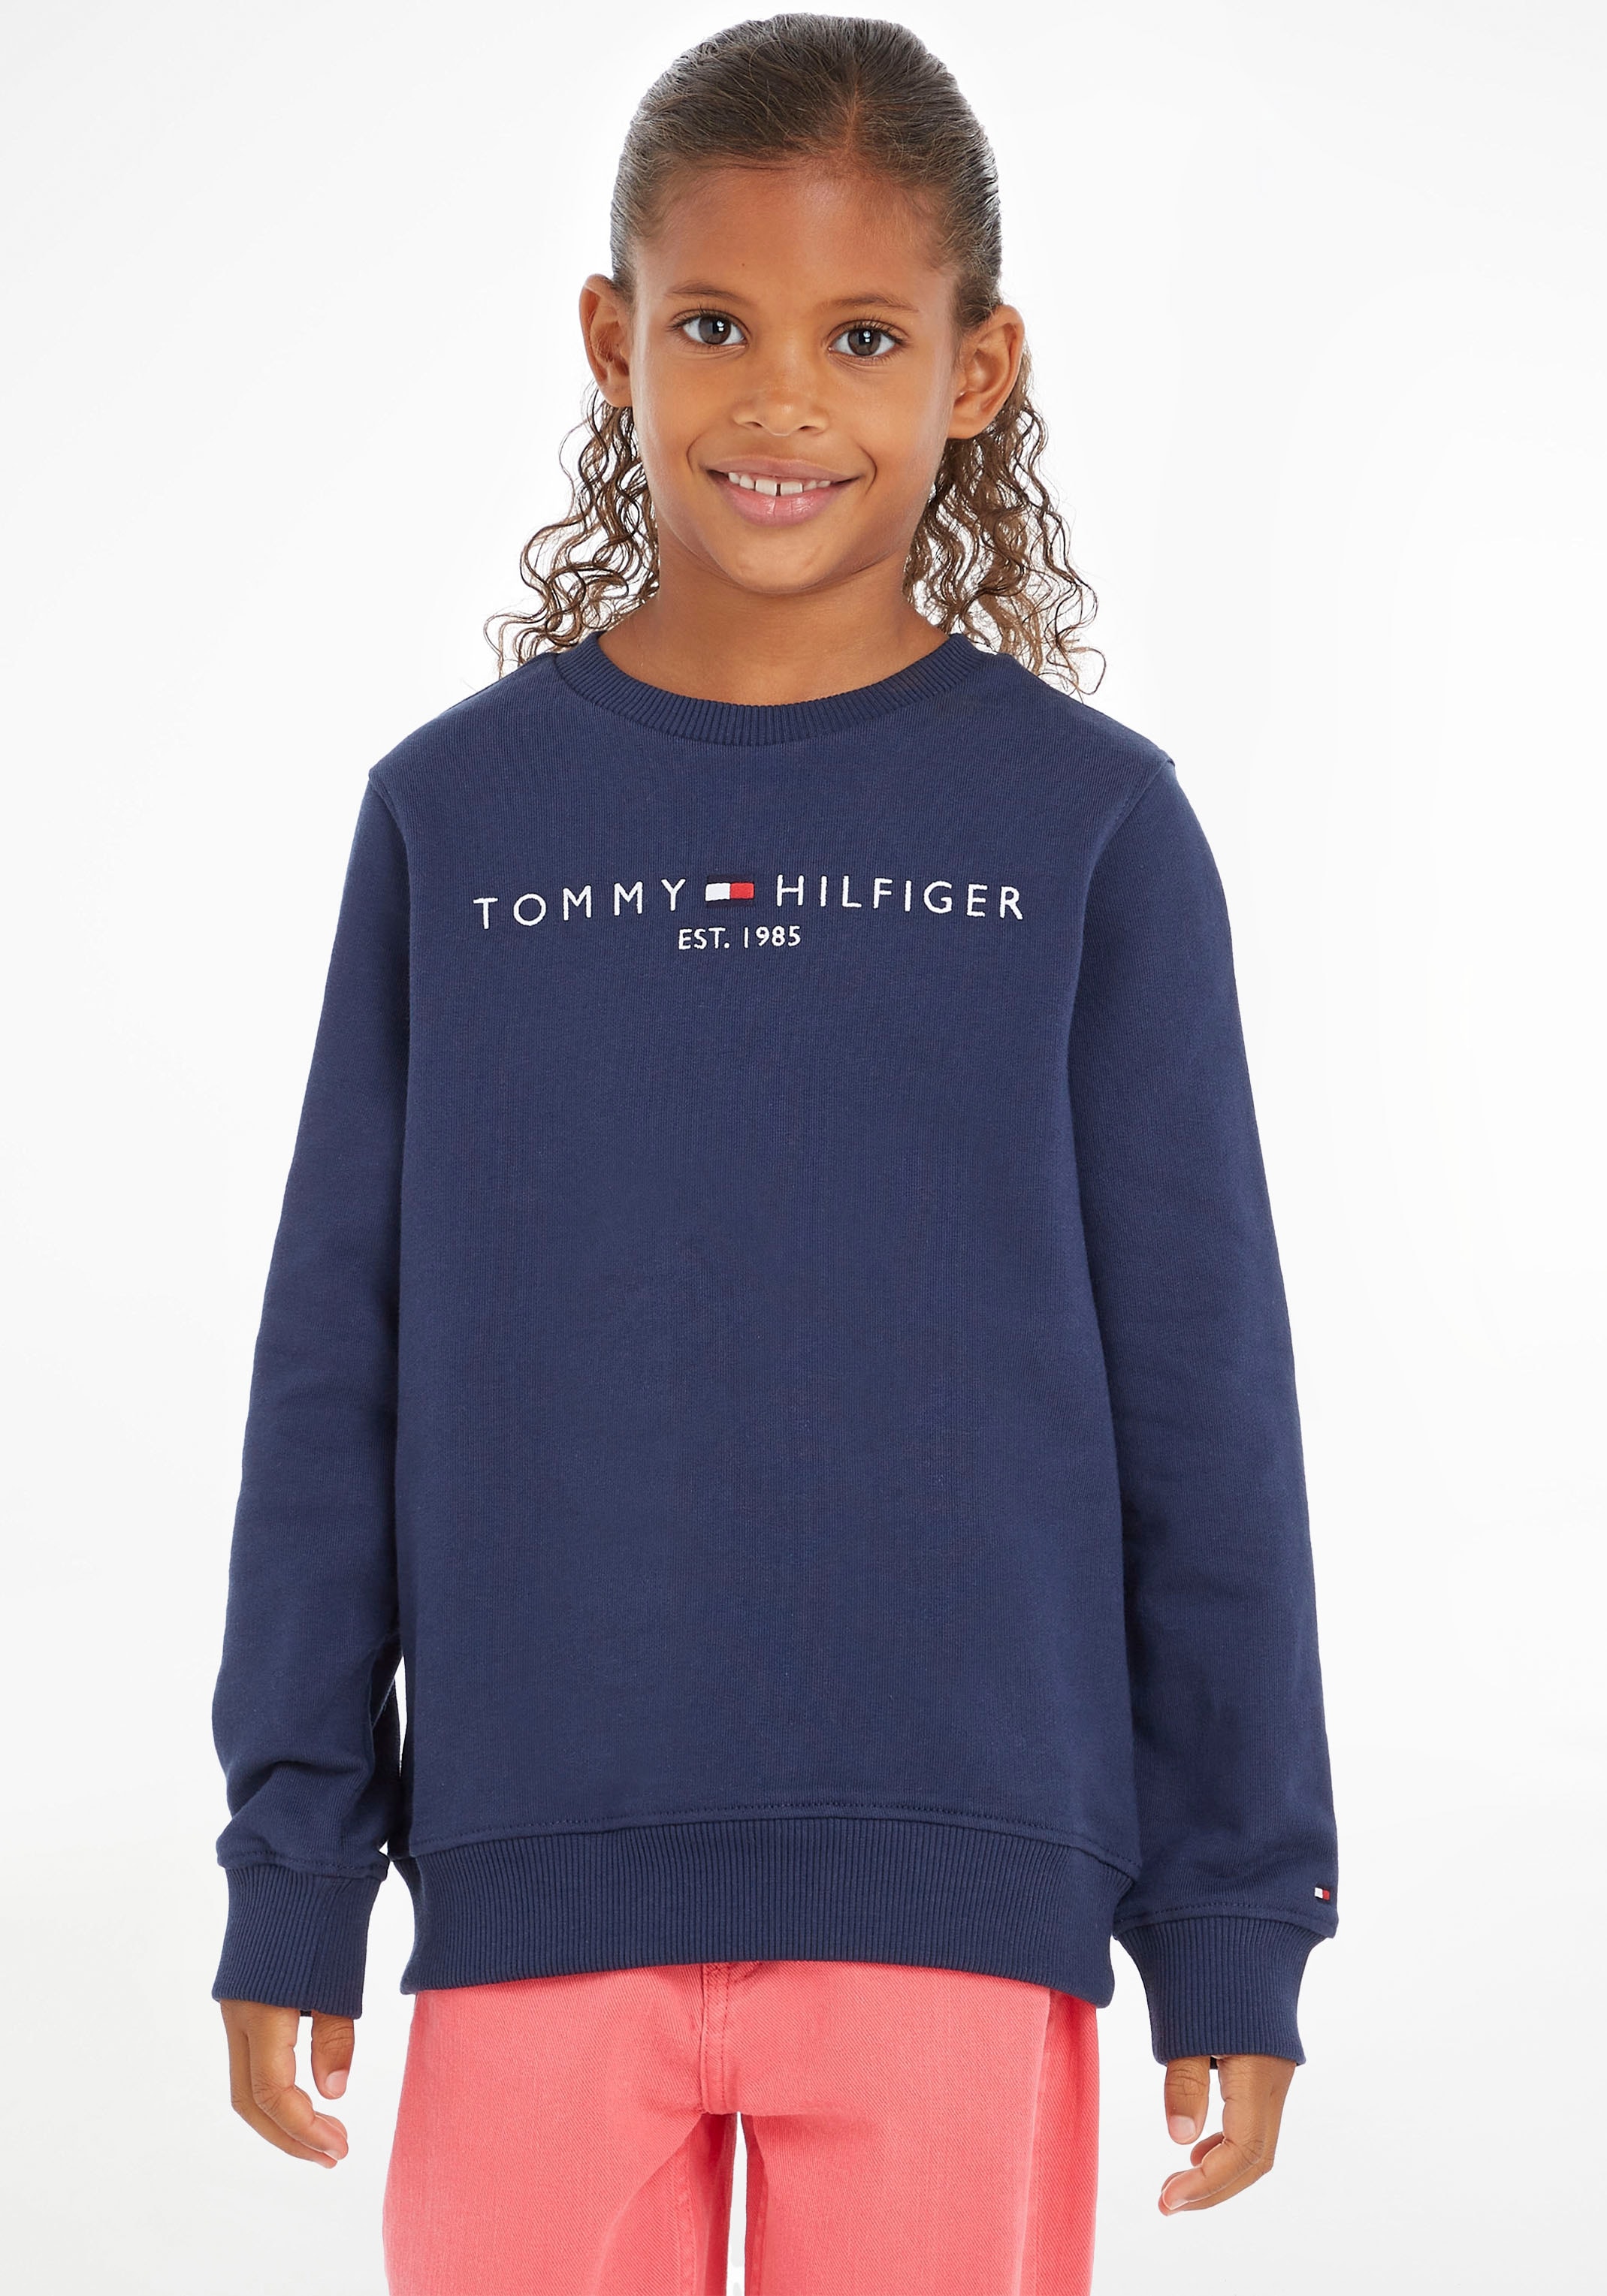 Kinder Kids Tommy »ESSENTIAL Mädchen Jungen bei MiniMe,für Junior Sweatshirt ♕ Hilfiger SWEATSHIRT«, und